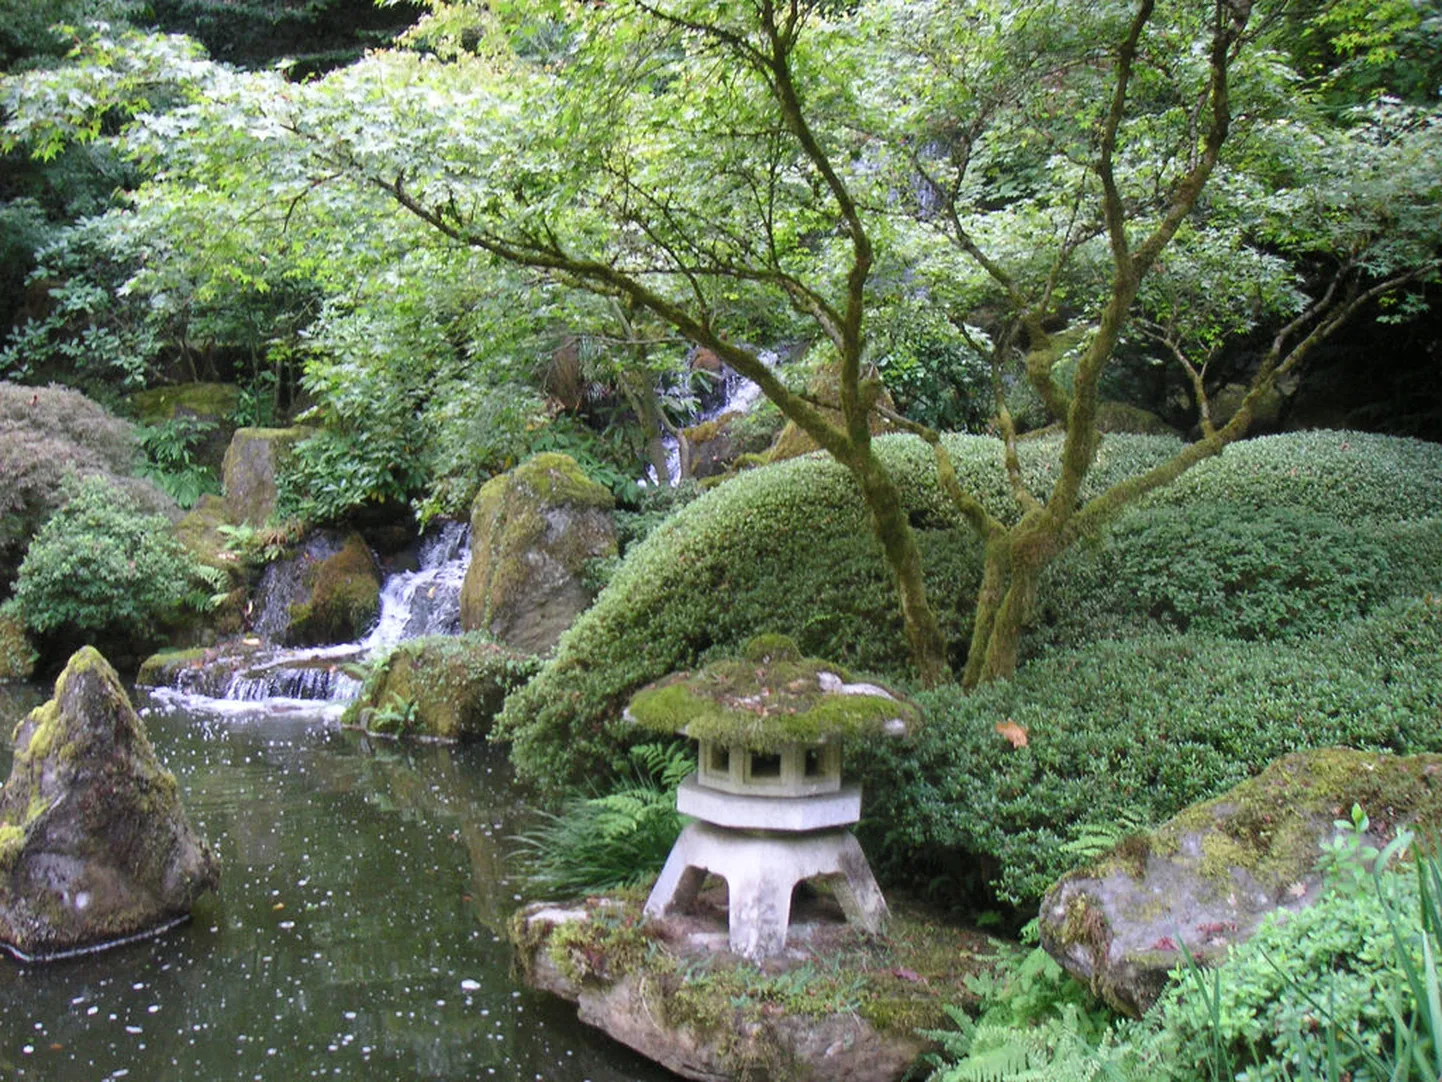 Jaapani aed traditsioonilise kivist laternaga.